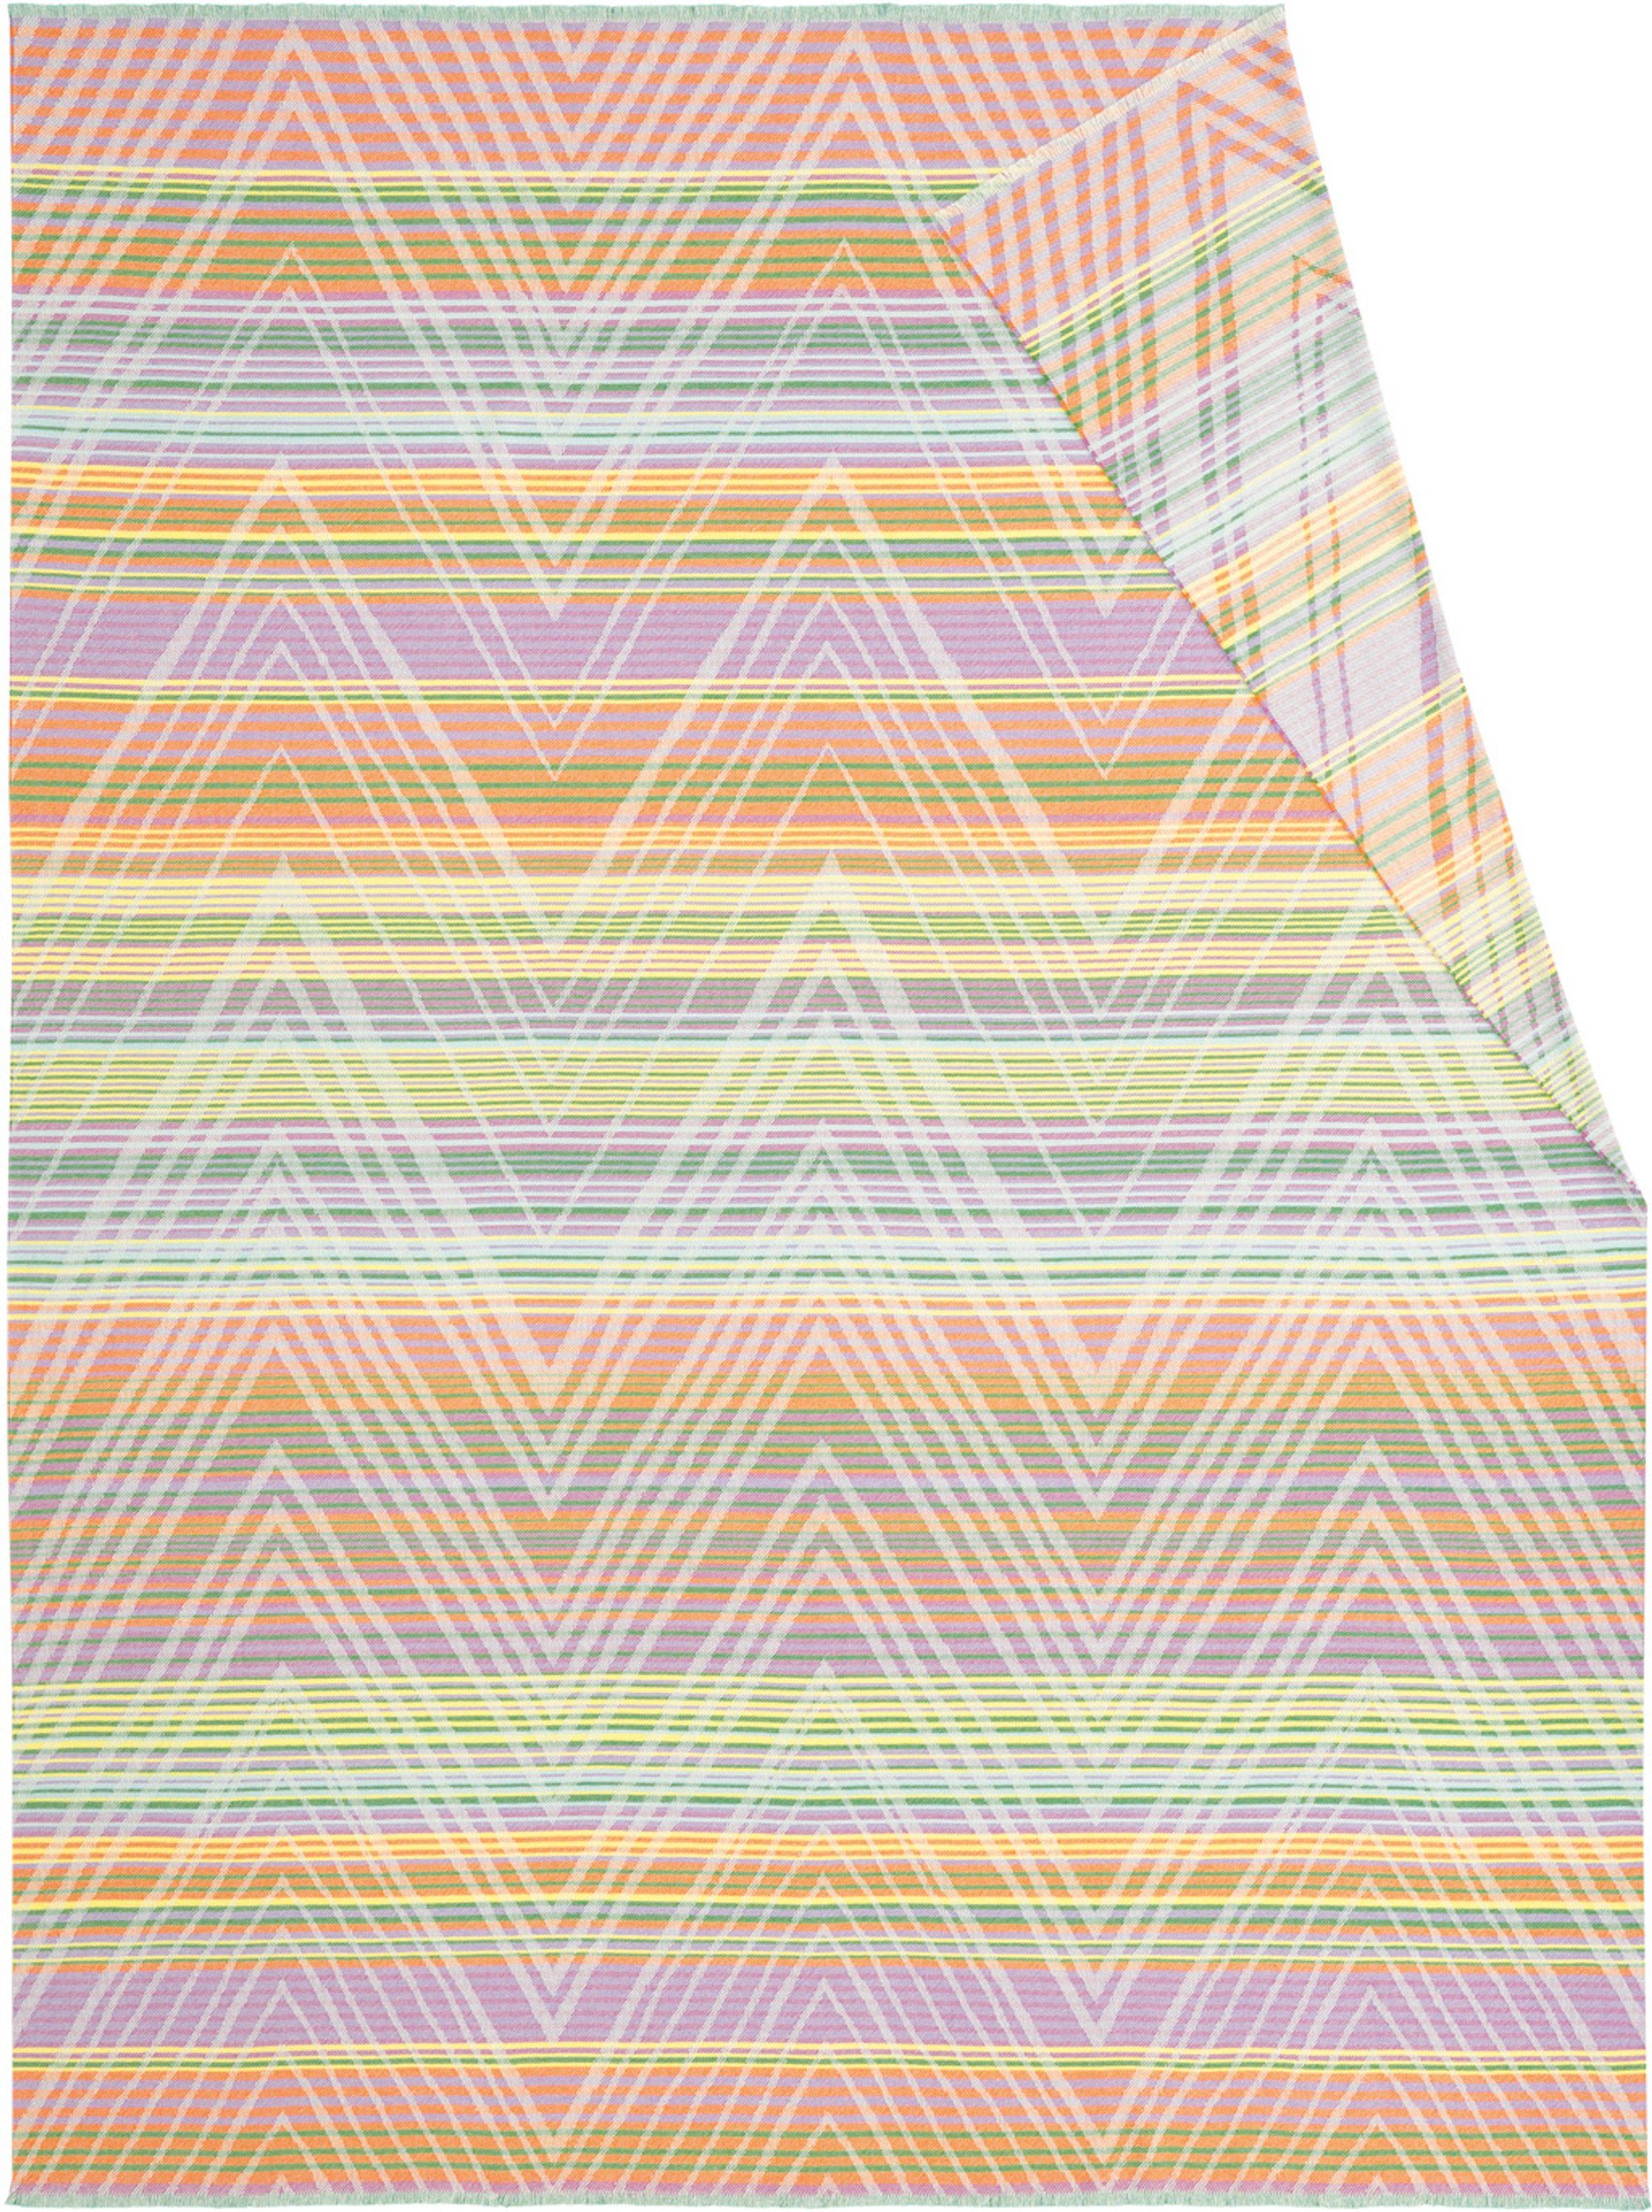 Wohndecke Biederlack Wohndecke FRISKY 793126, 150 x 200 cm, mehrfarbig, Biederlack, rechteckig